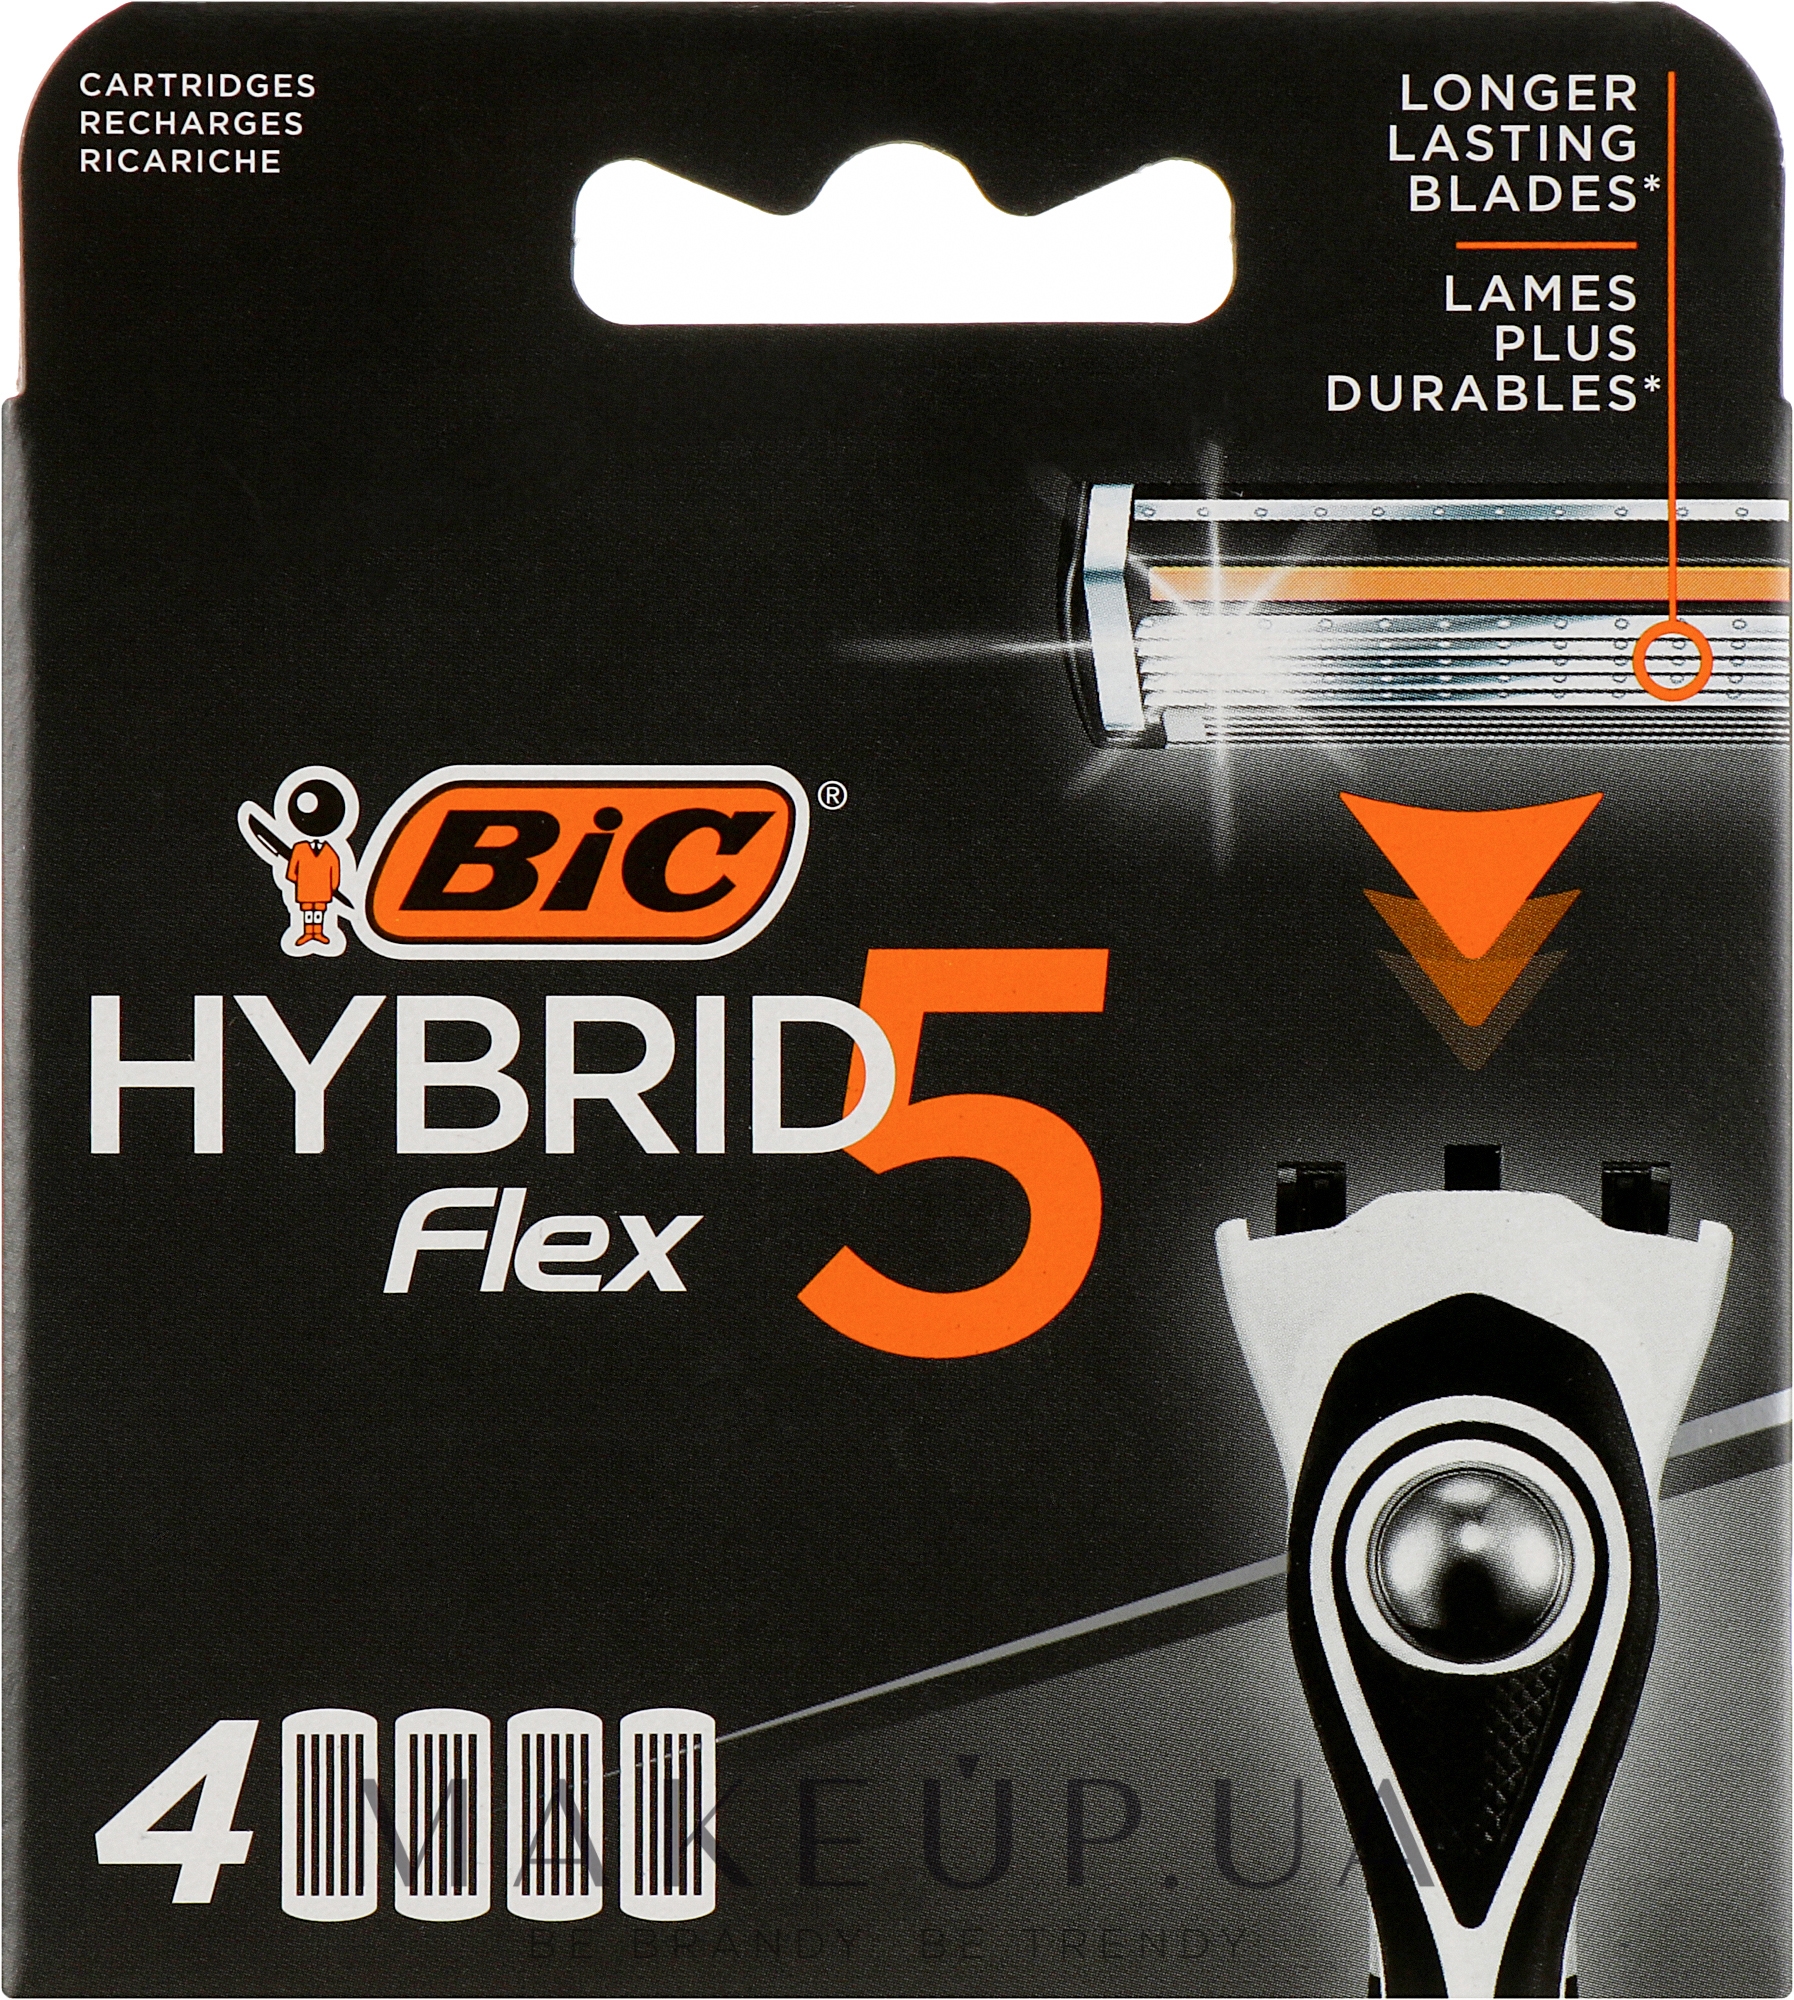 Сменные кассеты для бритья Flex 5 Hybrid, 4шт - Bic — фото 4шт